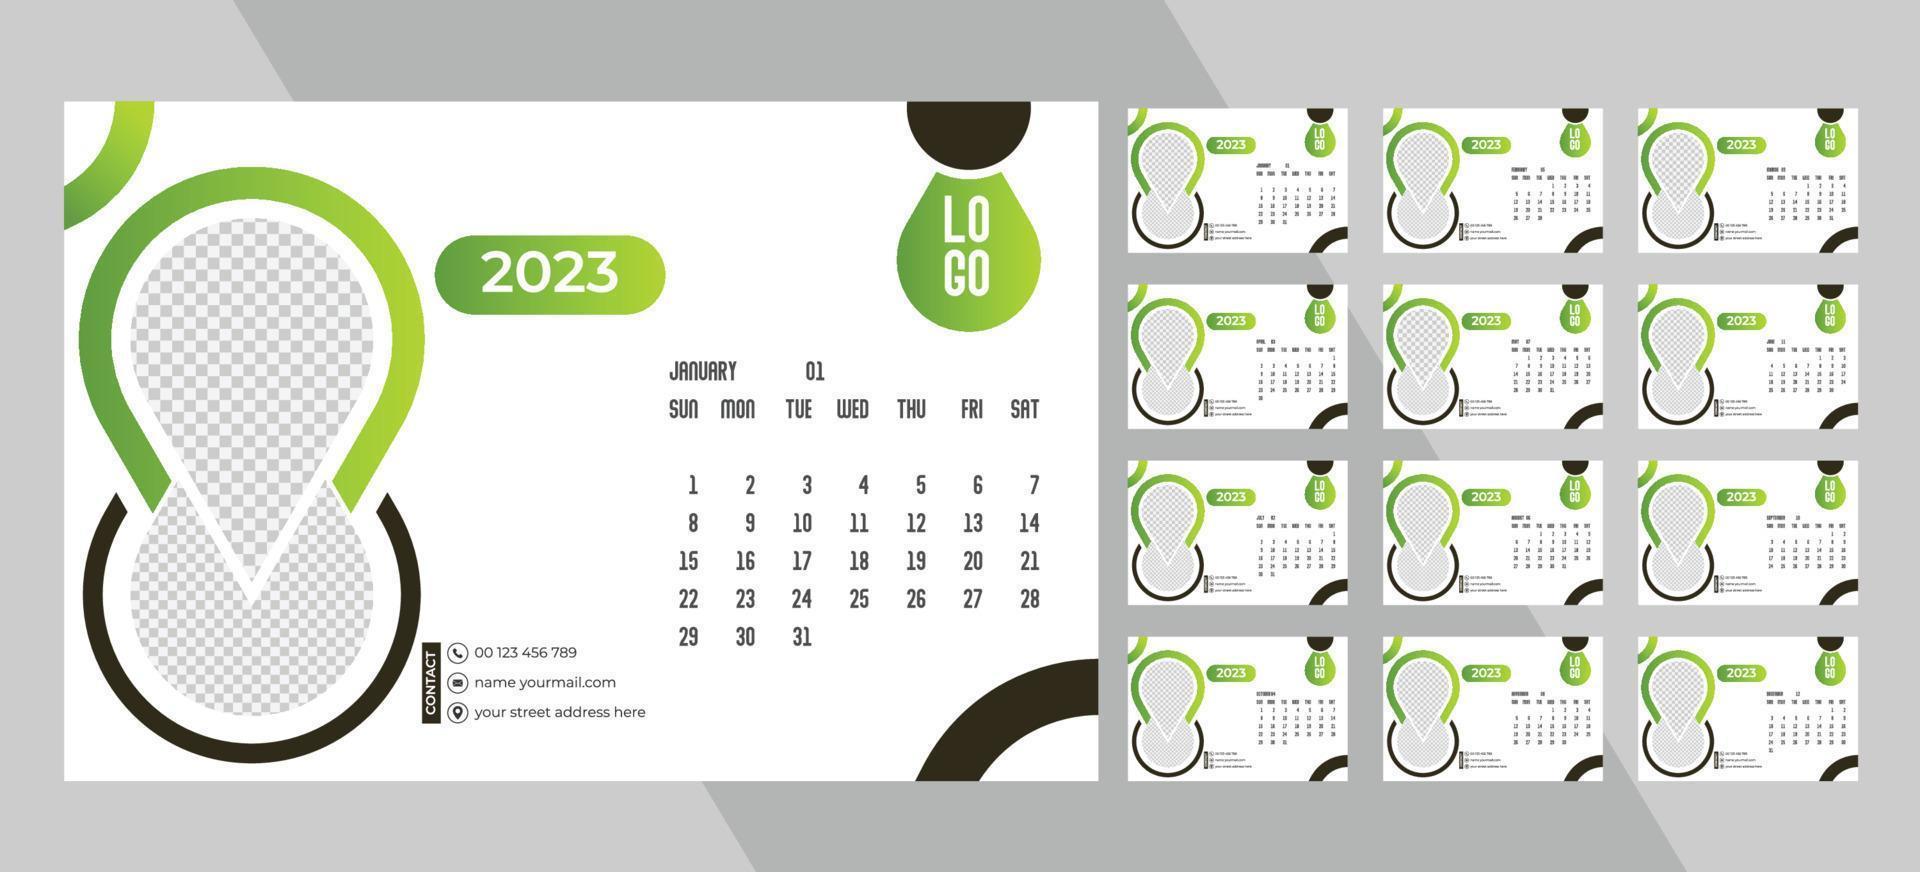 calendário de fotos mensal de mesa 2023. layout de calendário de fotos horizontal mensal simples para o ano novo de 2023 em inglês. calendário de capa e modelos de 12 meses. vetor